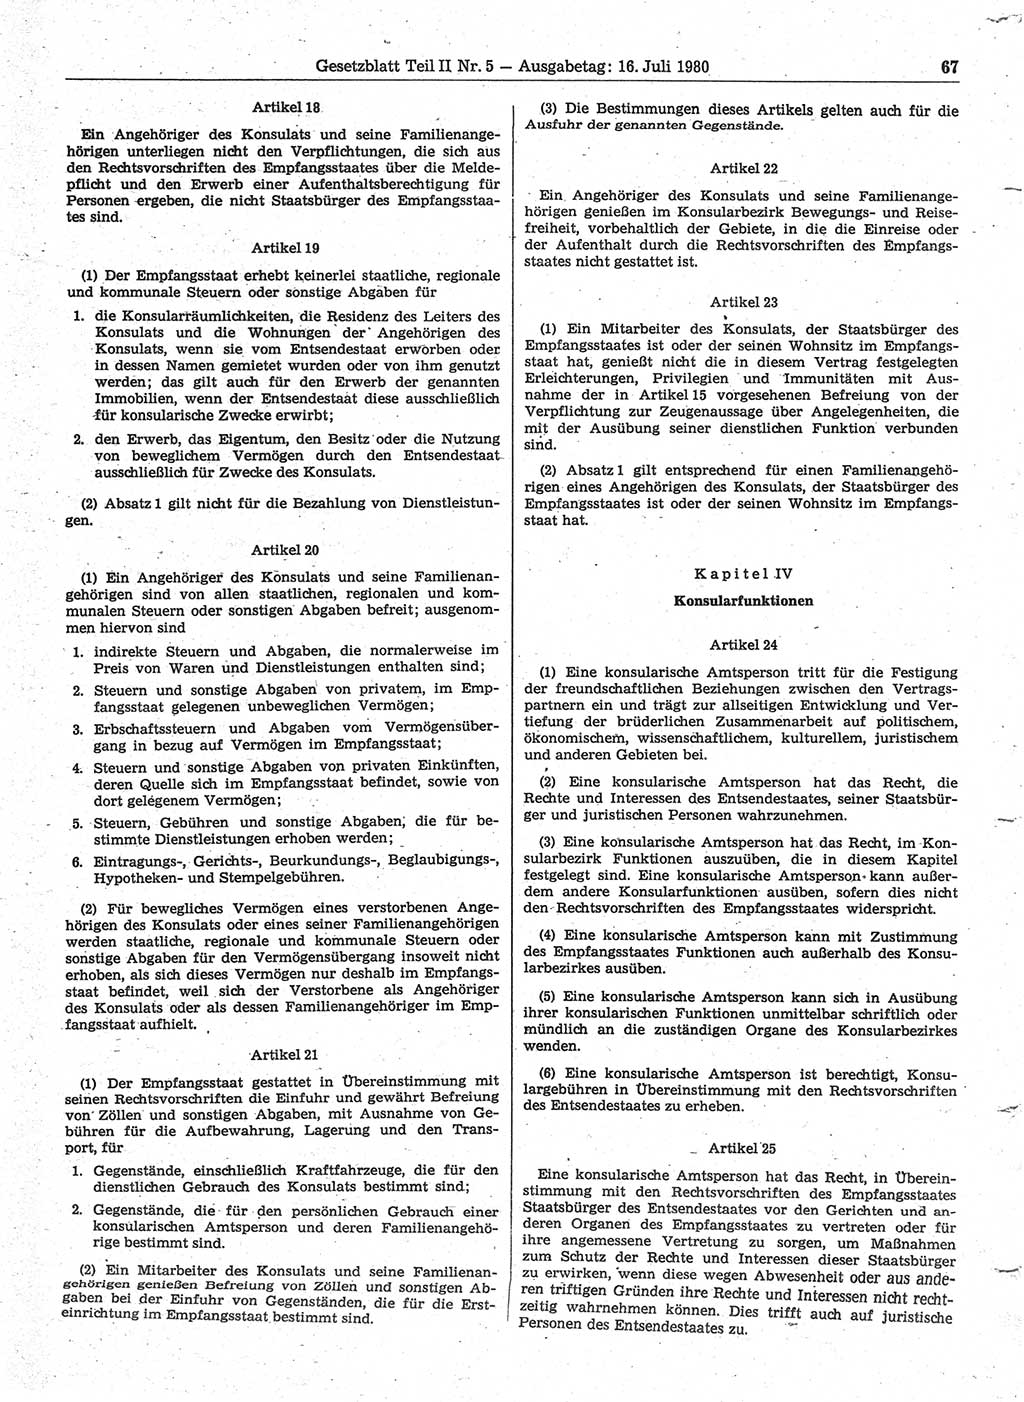 Gesetzblatt (GBl.) der Deutschen Demokratischen Republik (DDR) Teil ⅠⅠ 1980, Seite 67 (GBl. DDR ⅠⅠ 1980, S. 67)